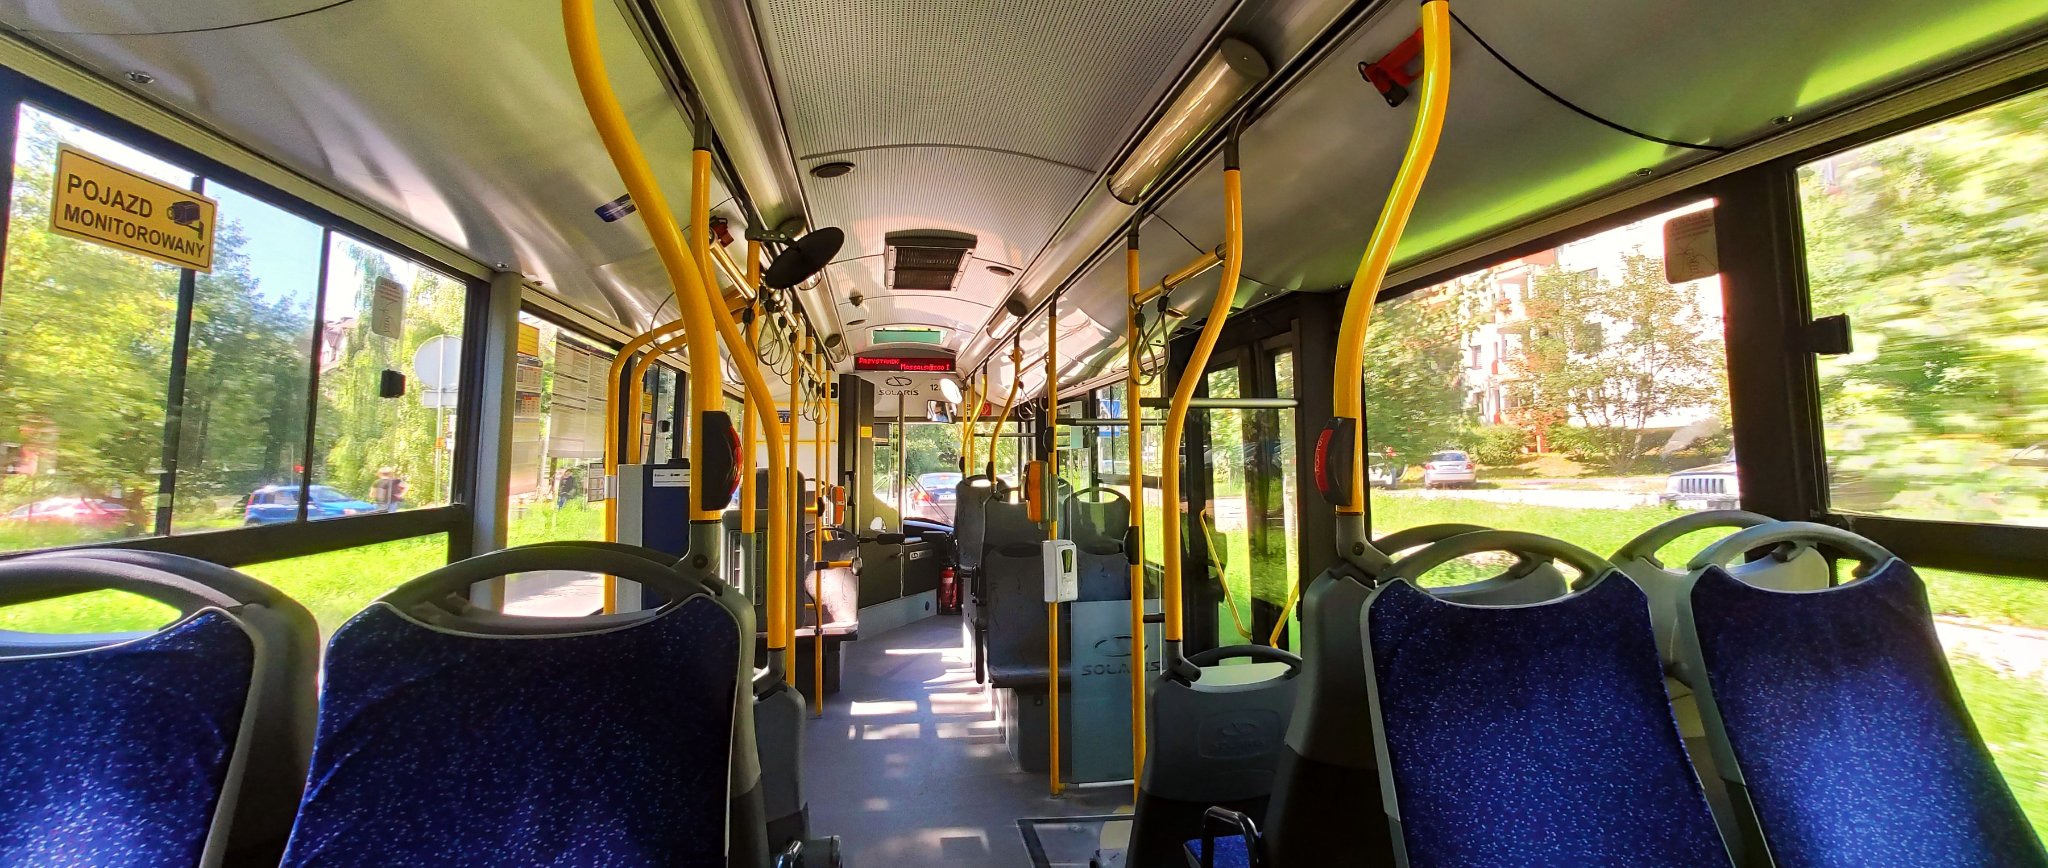 Zdjęcie przedstawia wnętrze autobusu komunikacji miejskiej